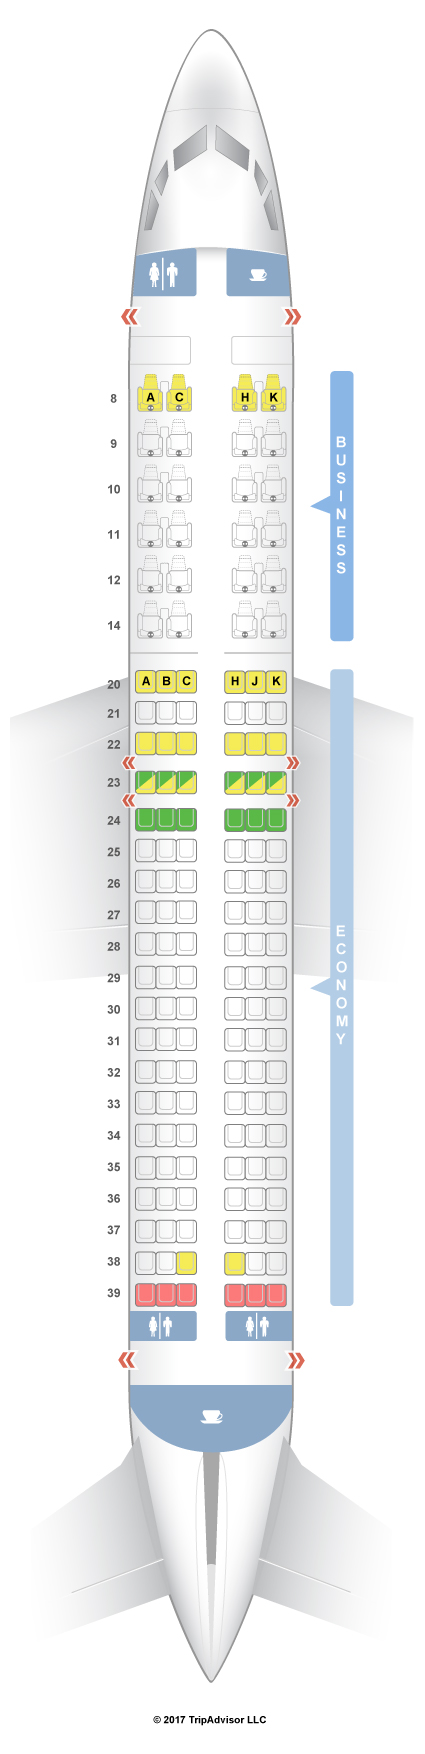 Sitzplan sunexpress A330 Sitzplan